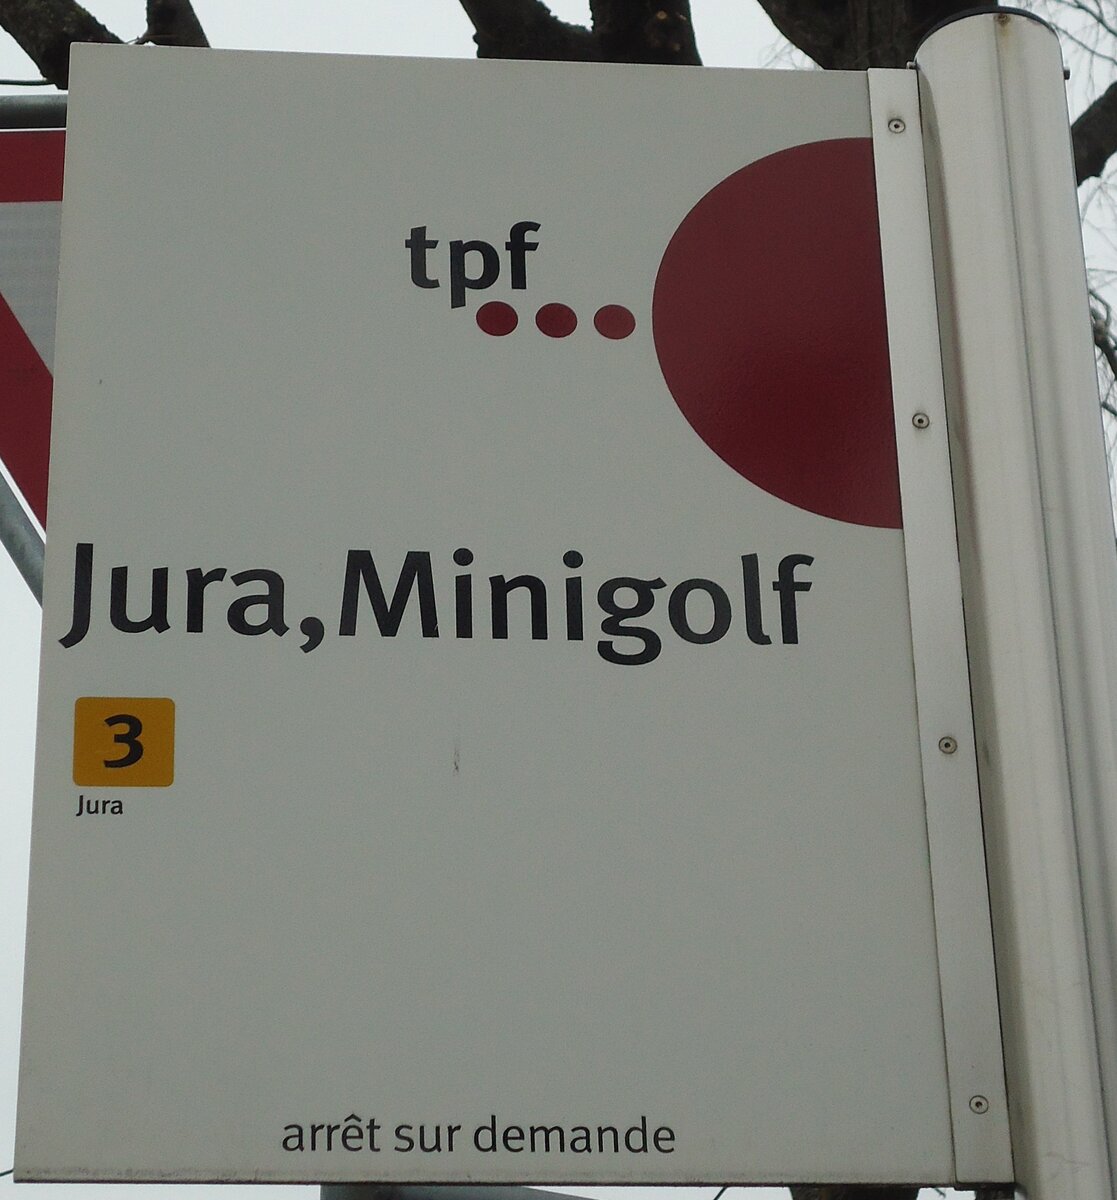 (132'712) - tpf-Haltestellenschild - Fribourg, Jura, Minigolg - am 7. Mrz 2011